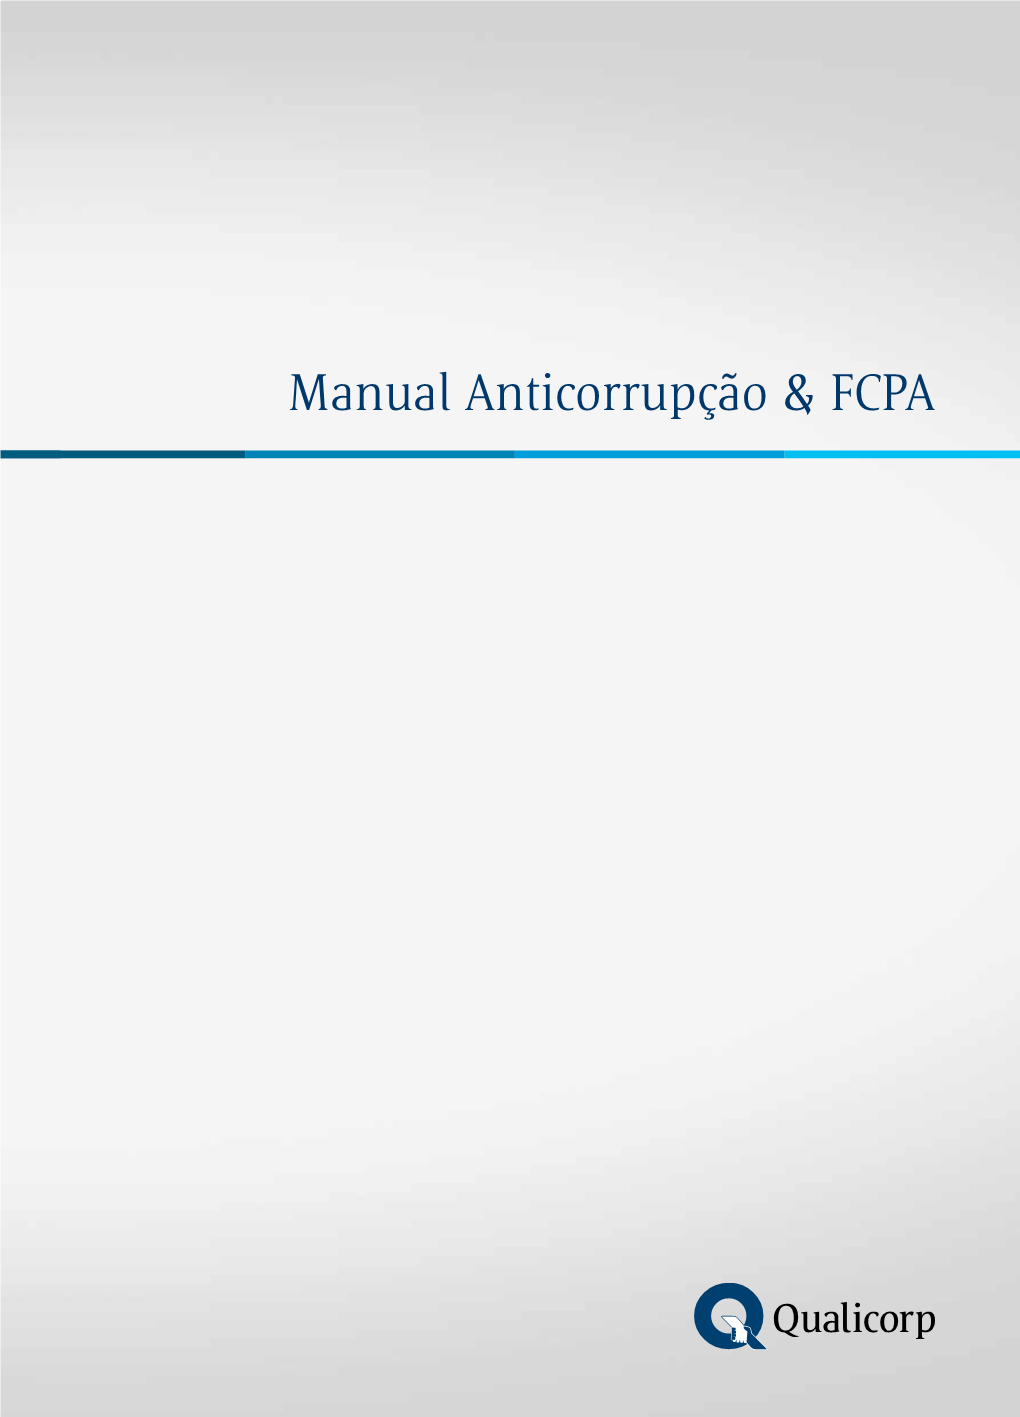 Manual Anticorrupção & FCPA